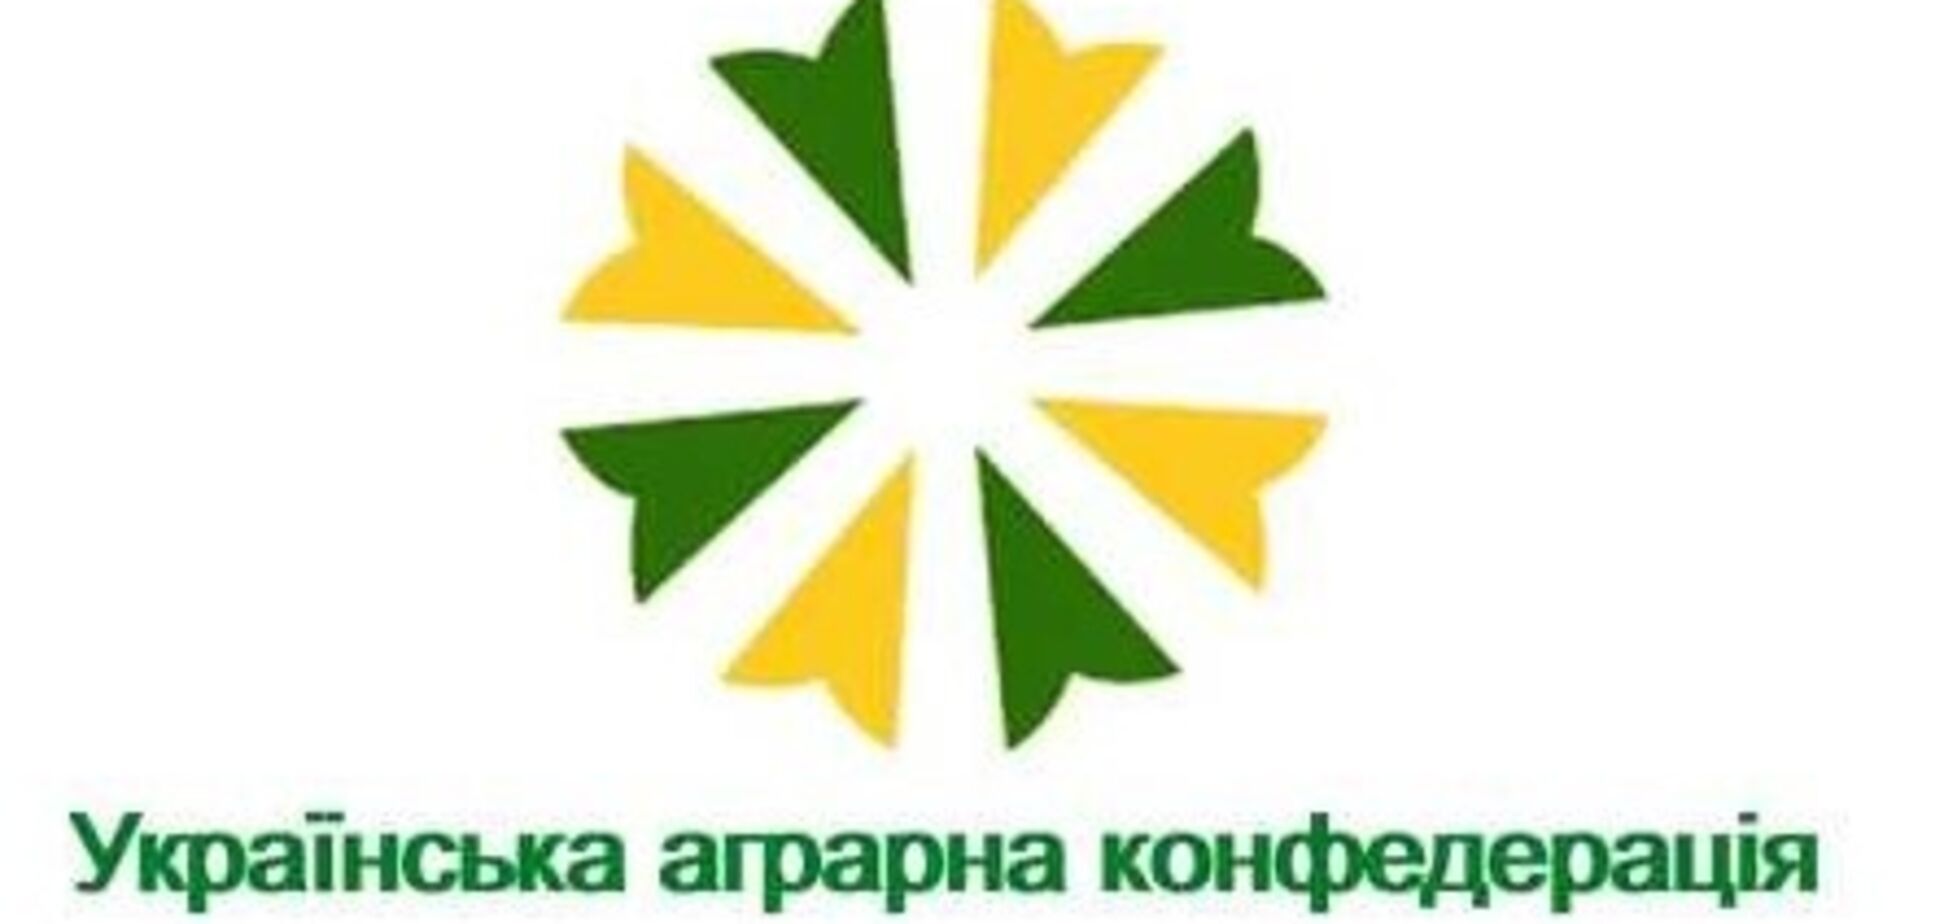 Бизнес Бахматюка: украинская аграрная конфедерация обратилась к Зеленскому